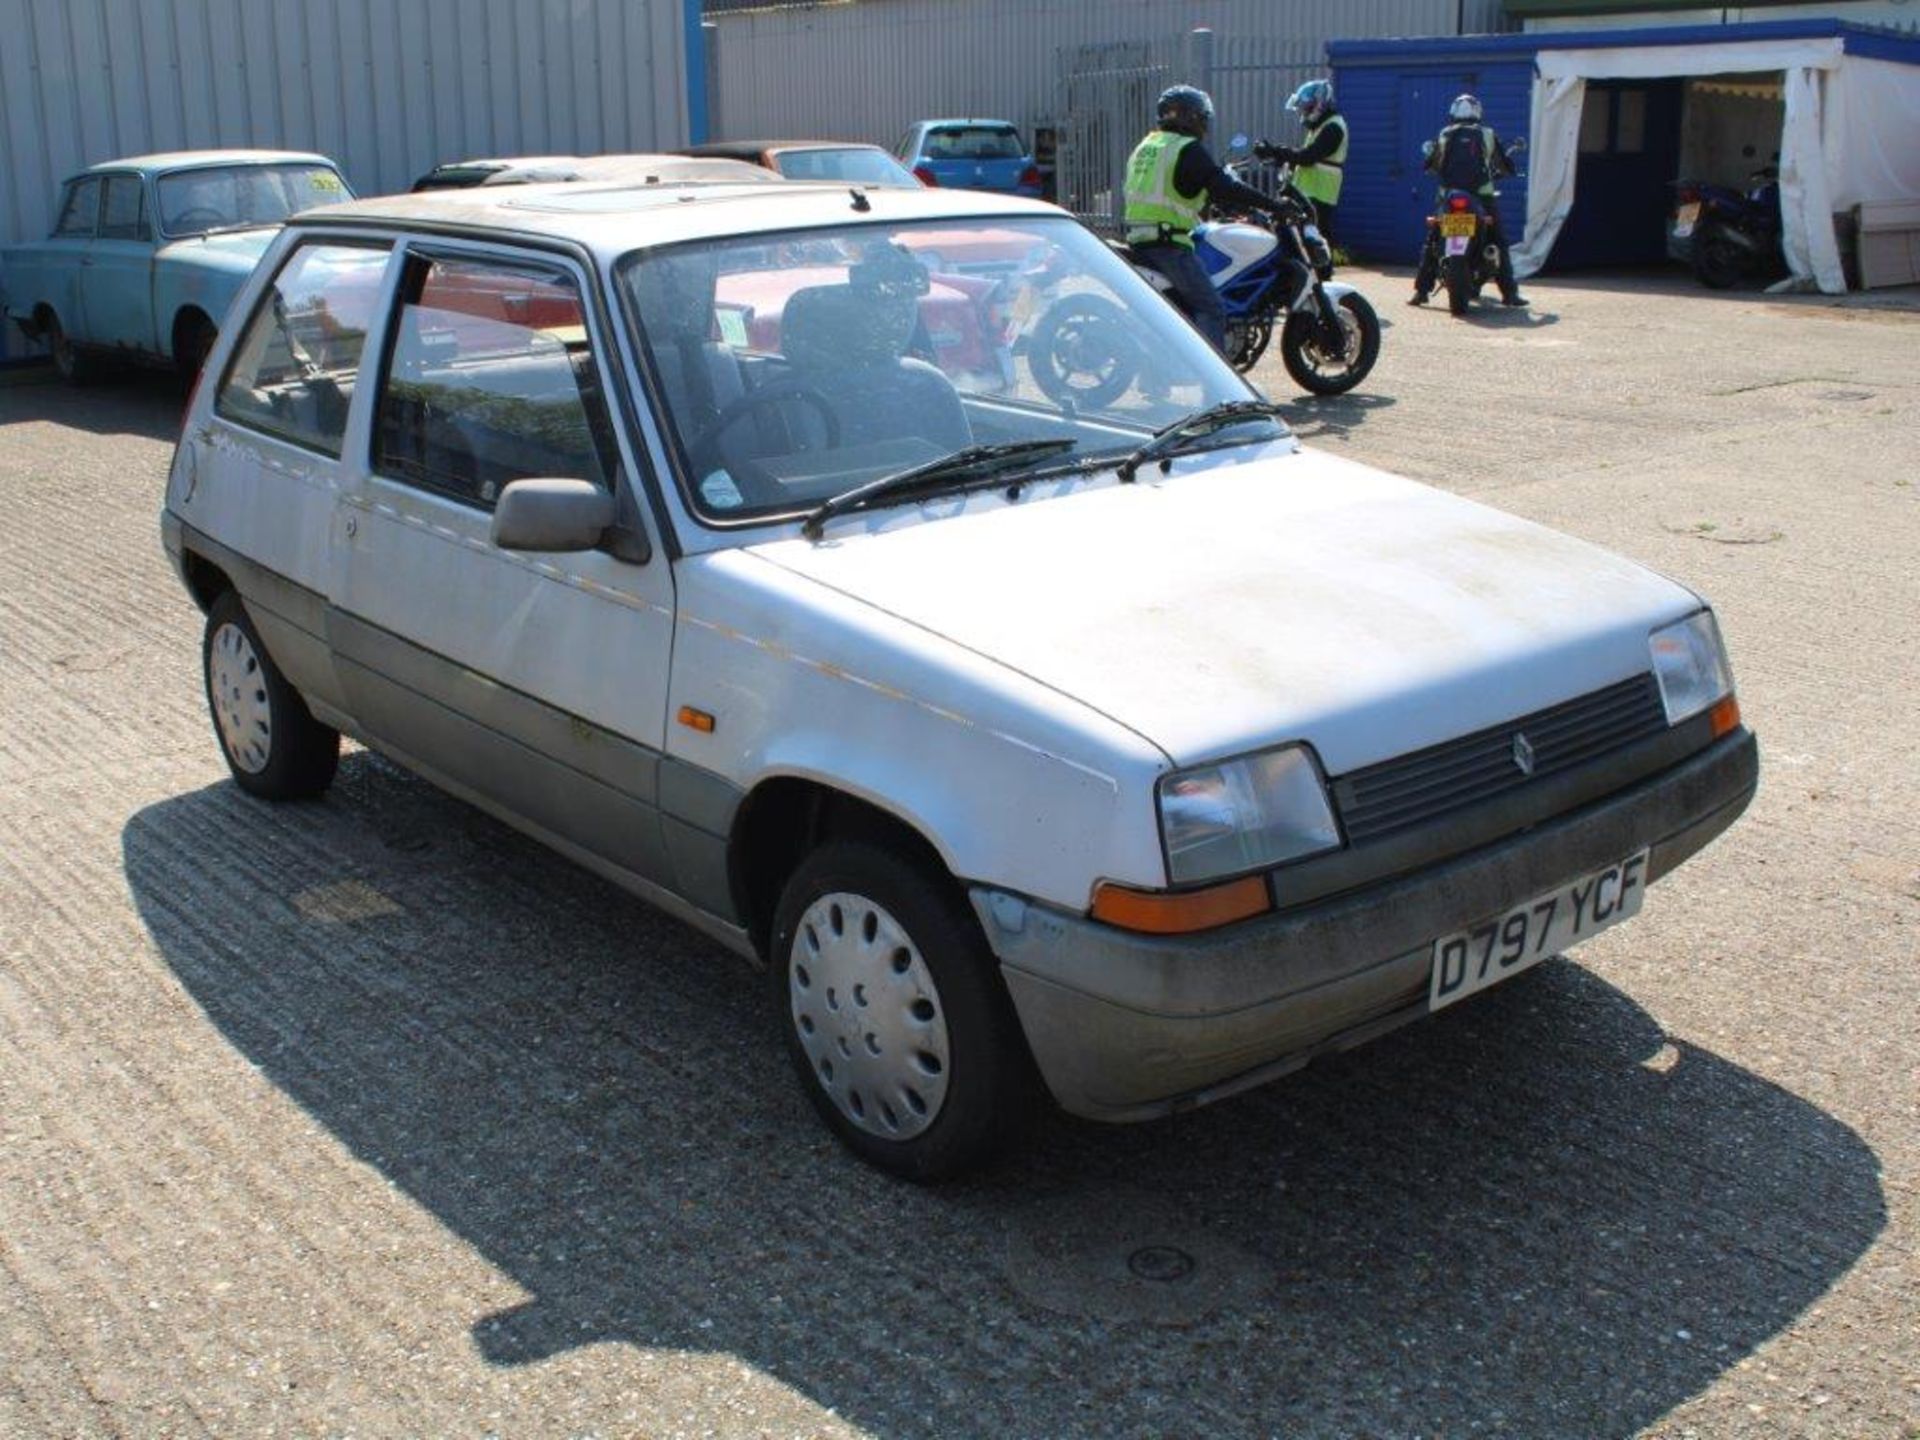 1987 Renault 5 TL Rio - Image 2 of 27